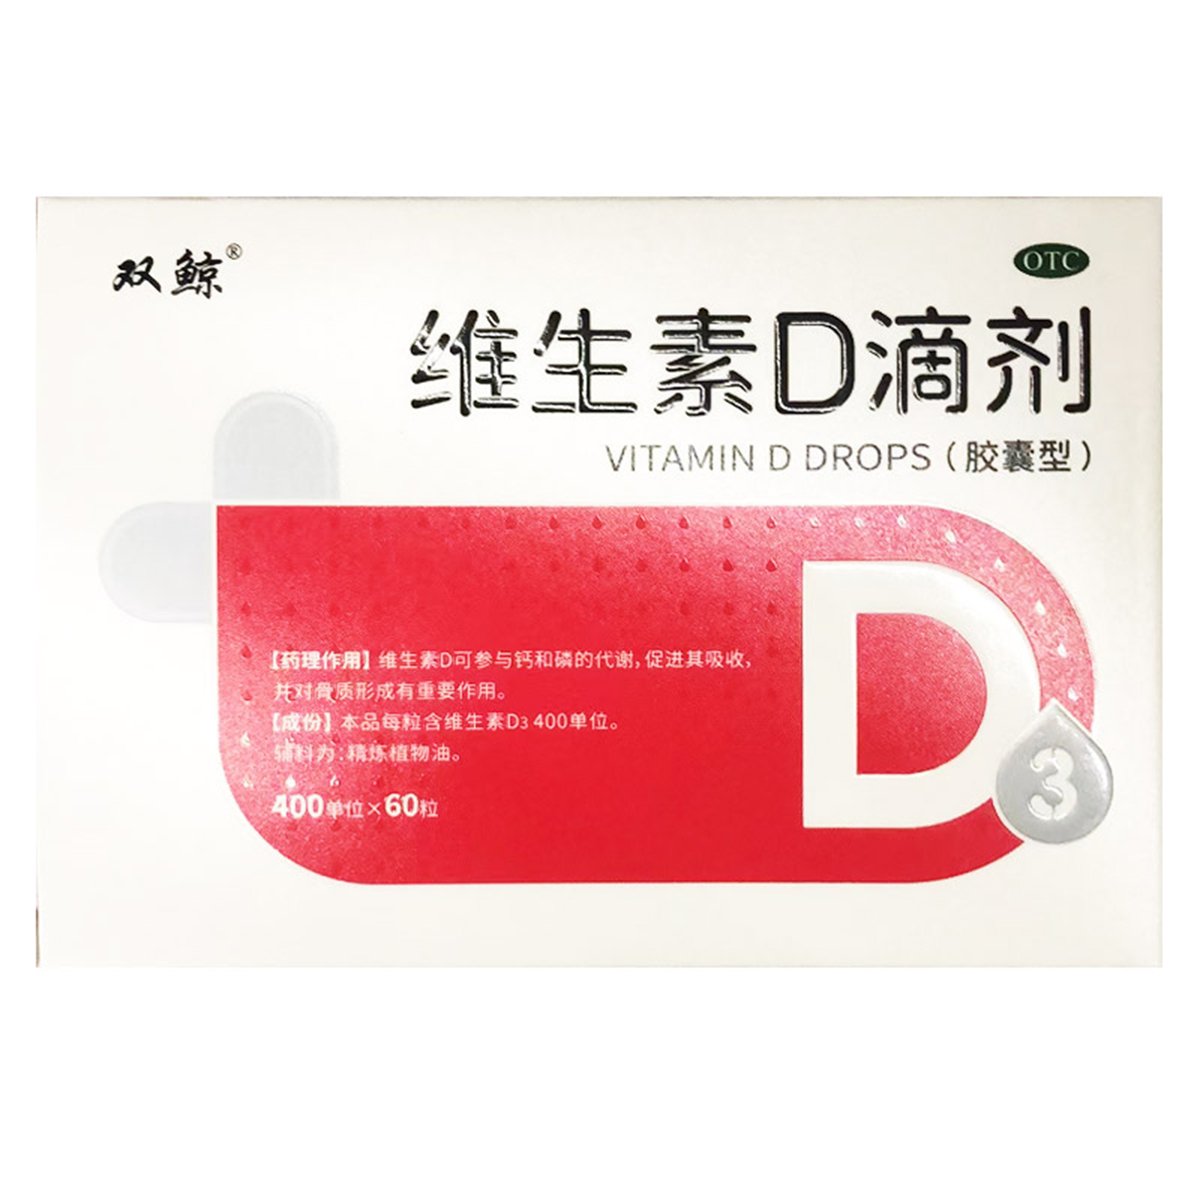 维生素D滴剂说明书,维生素D滴剂功效与作用_用法用量-药房网商城